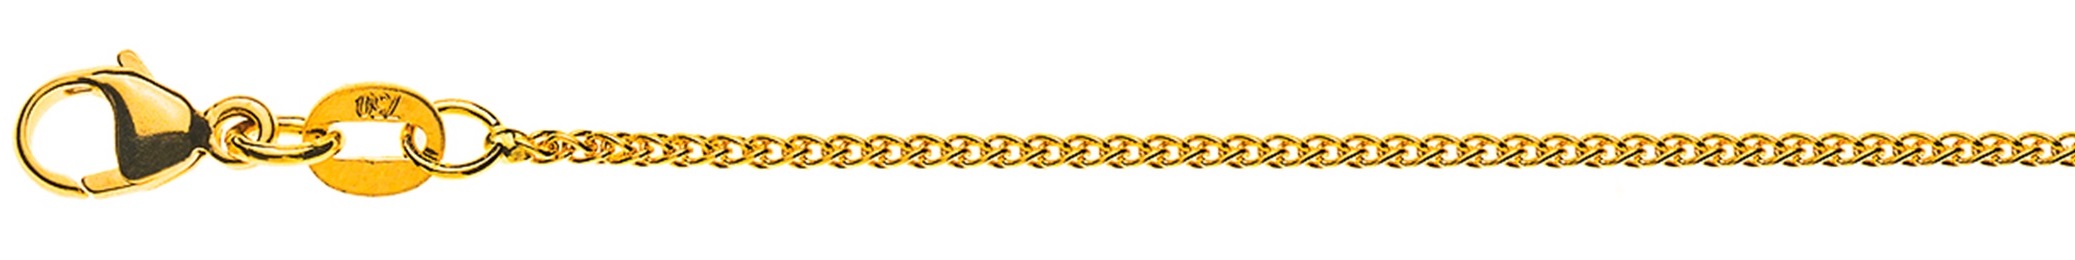 AURONOS Élégance Necklace yellow gold 14K cable chain 50cm 1.2mm